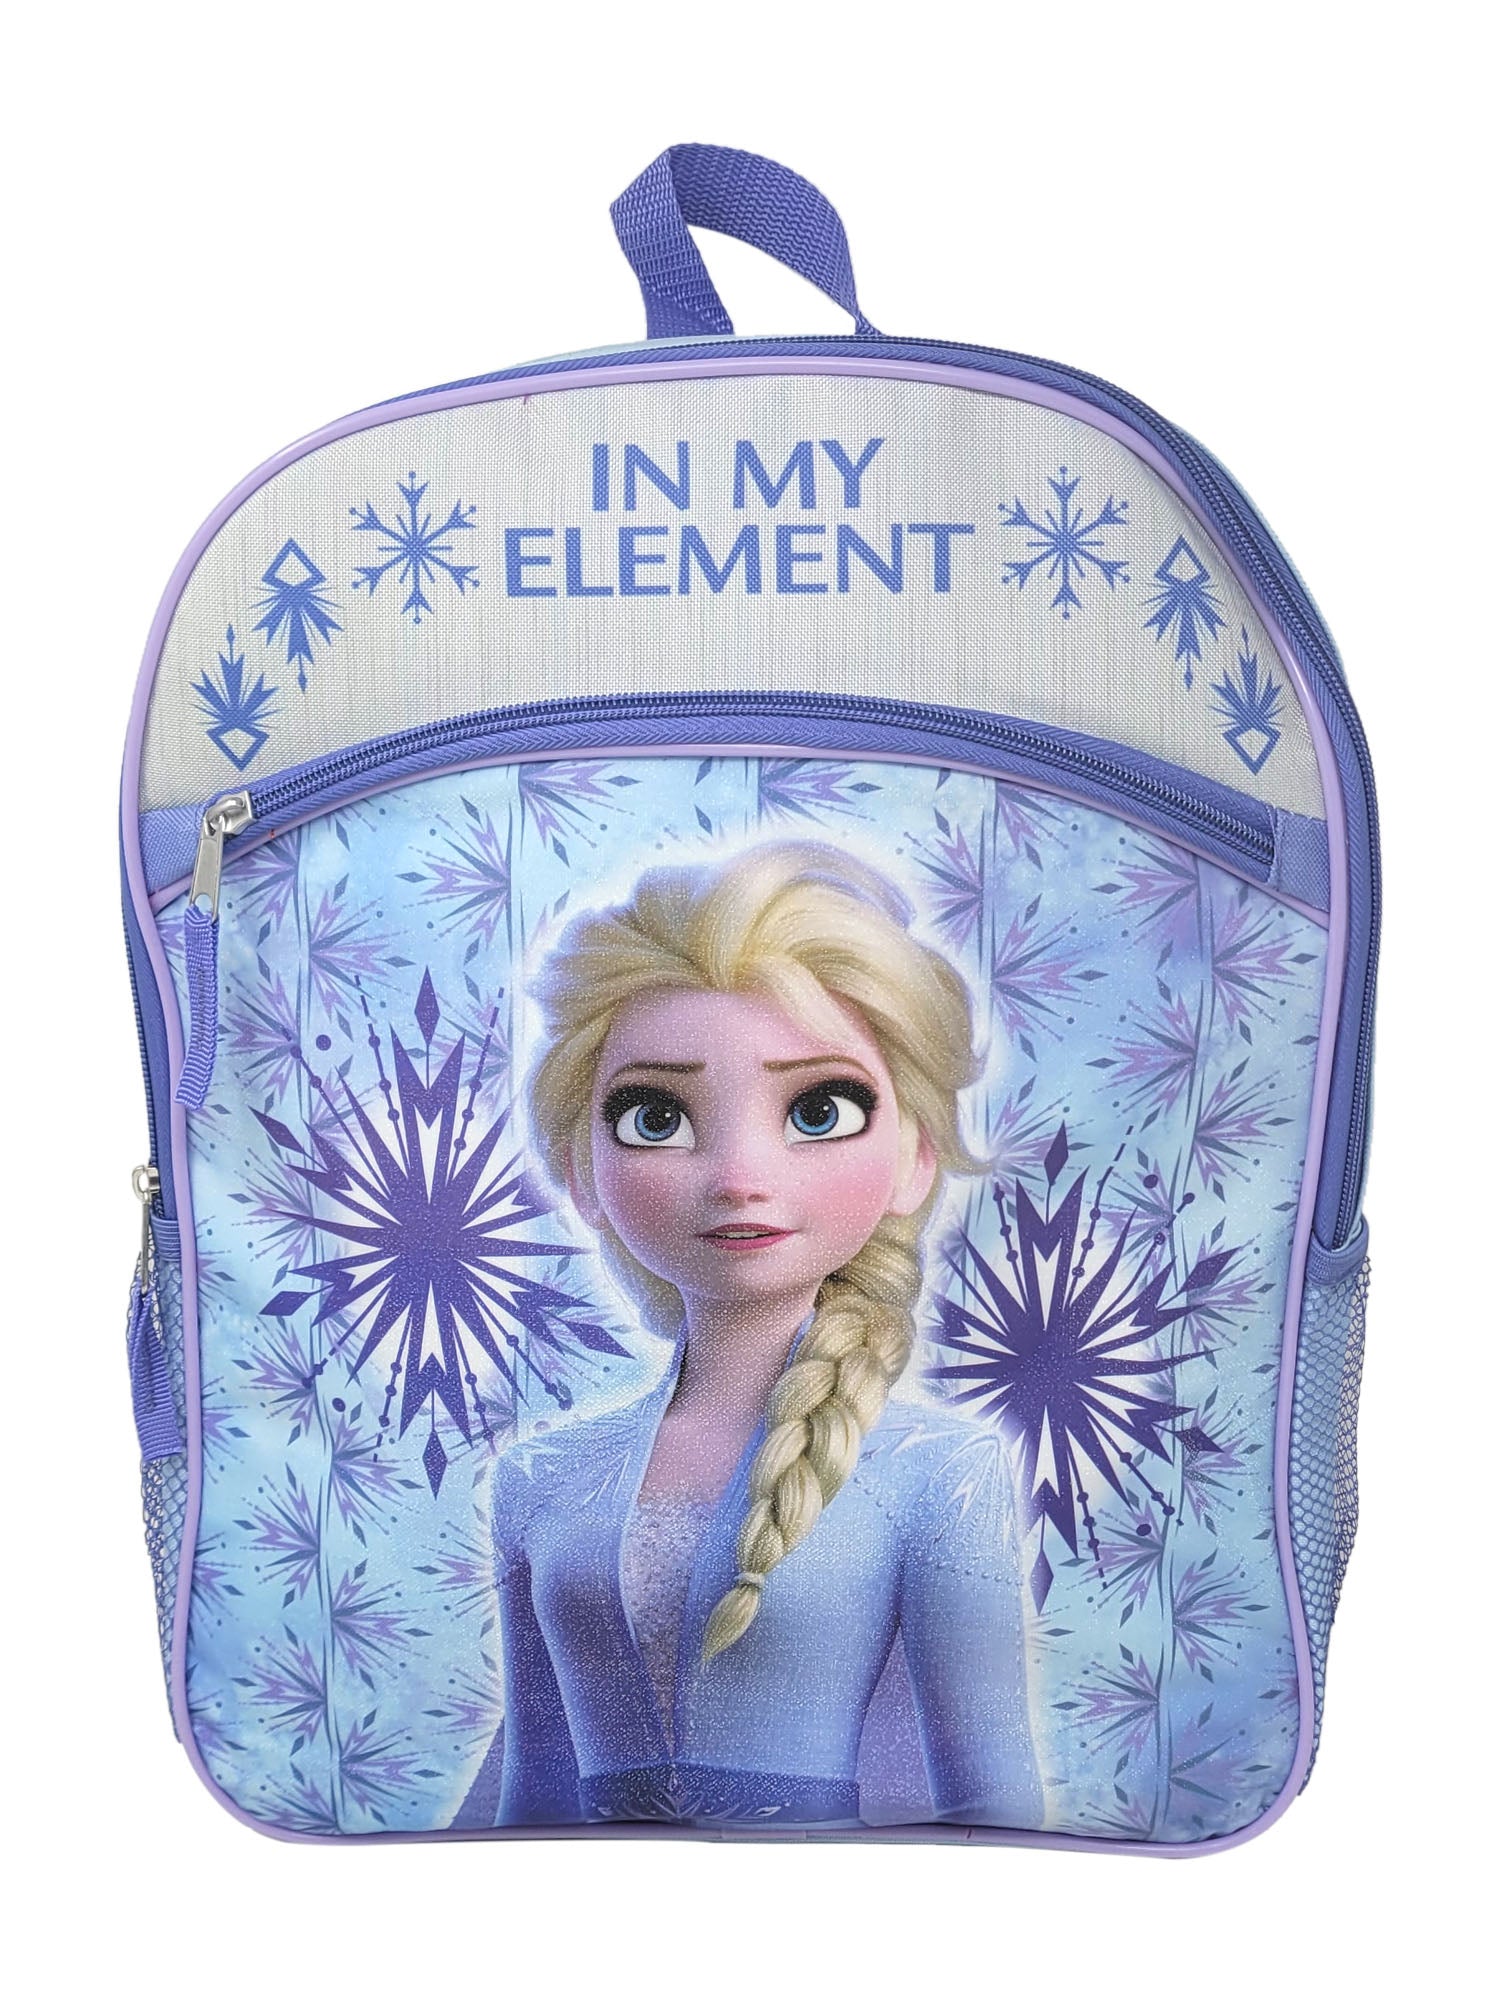 Disney Frozen Backpack Elsa Snowflakes 16" w/ (8-CT) Anna Elsa Hair Ties Ponies